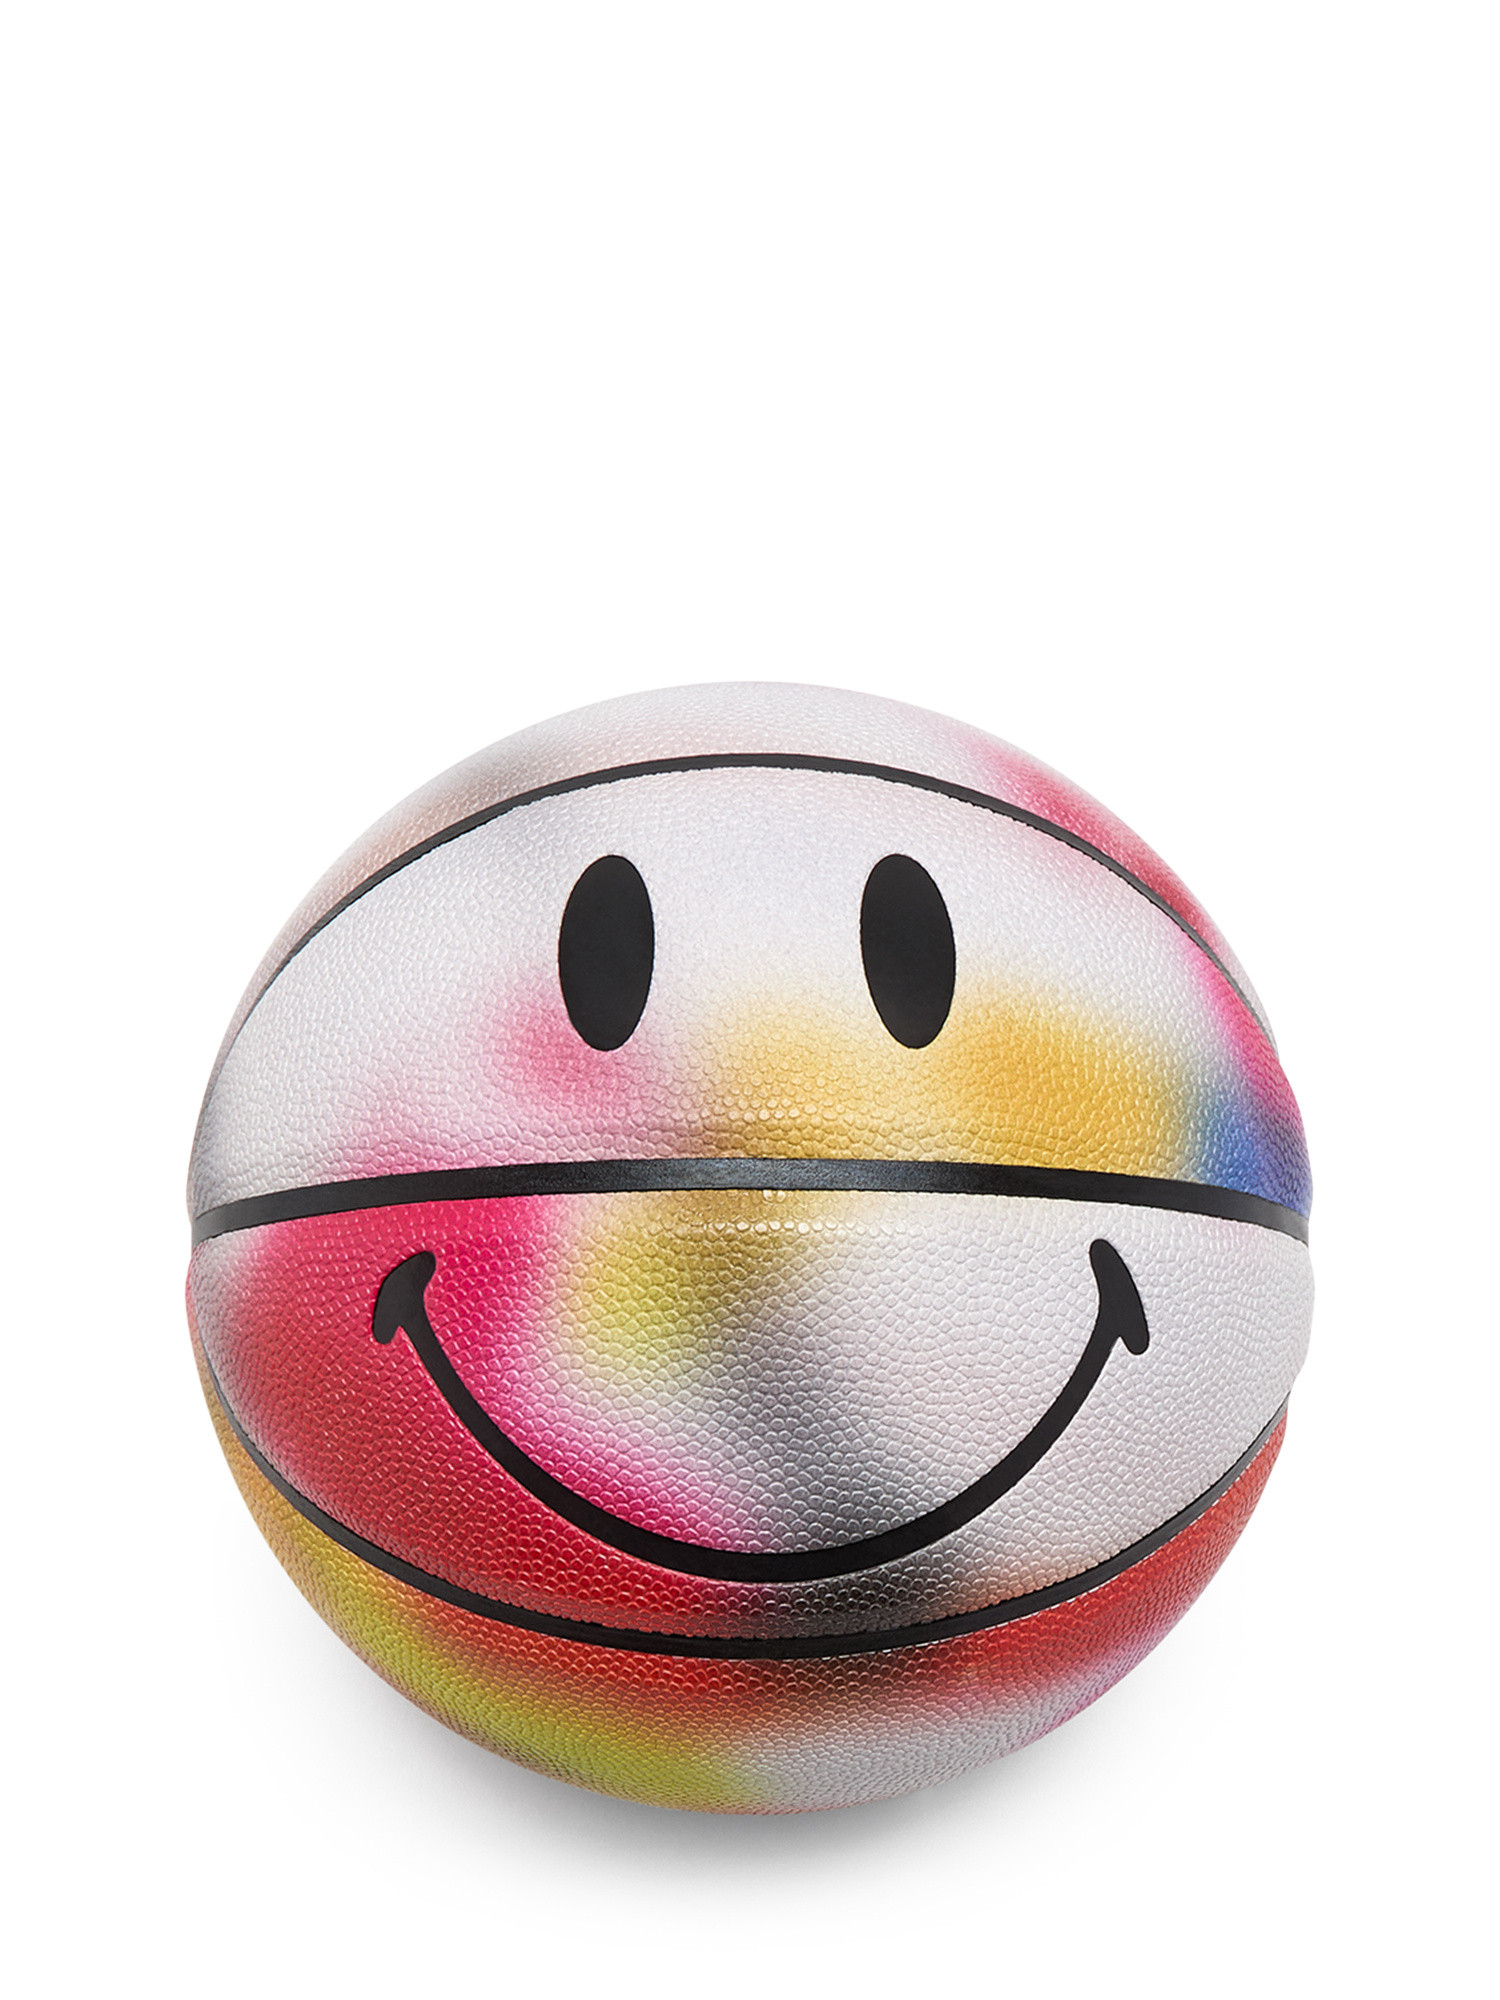 Market - Pallone da basket Smiley®, Multicolor, large image number 1